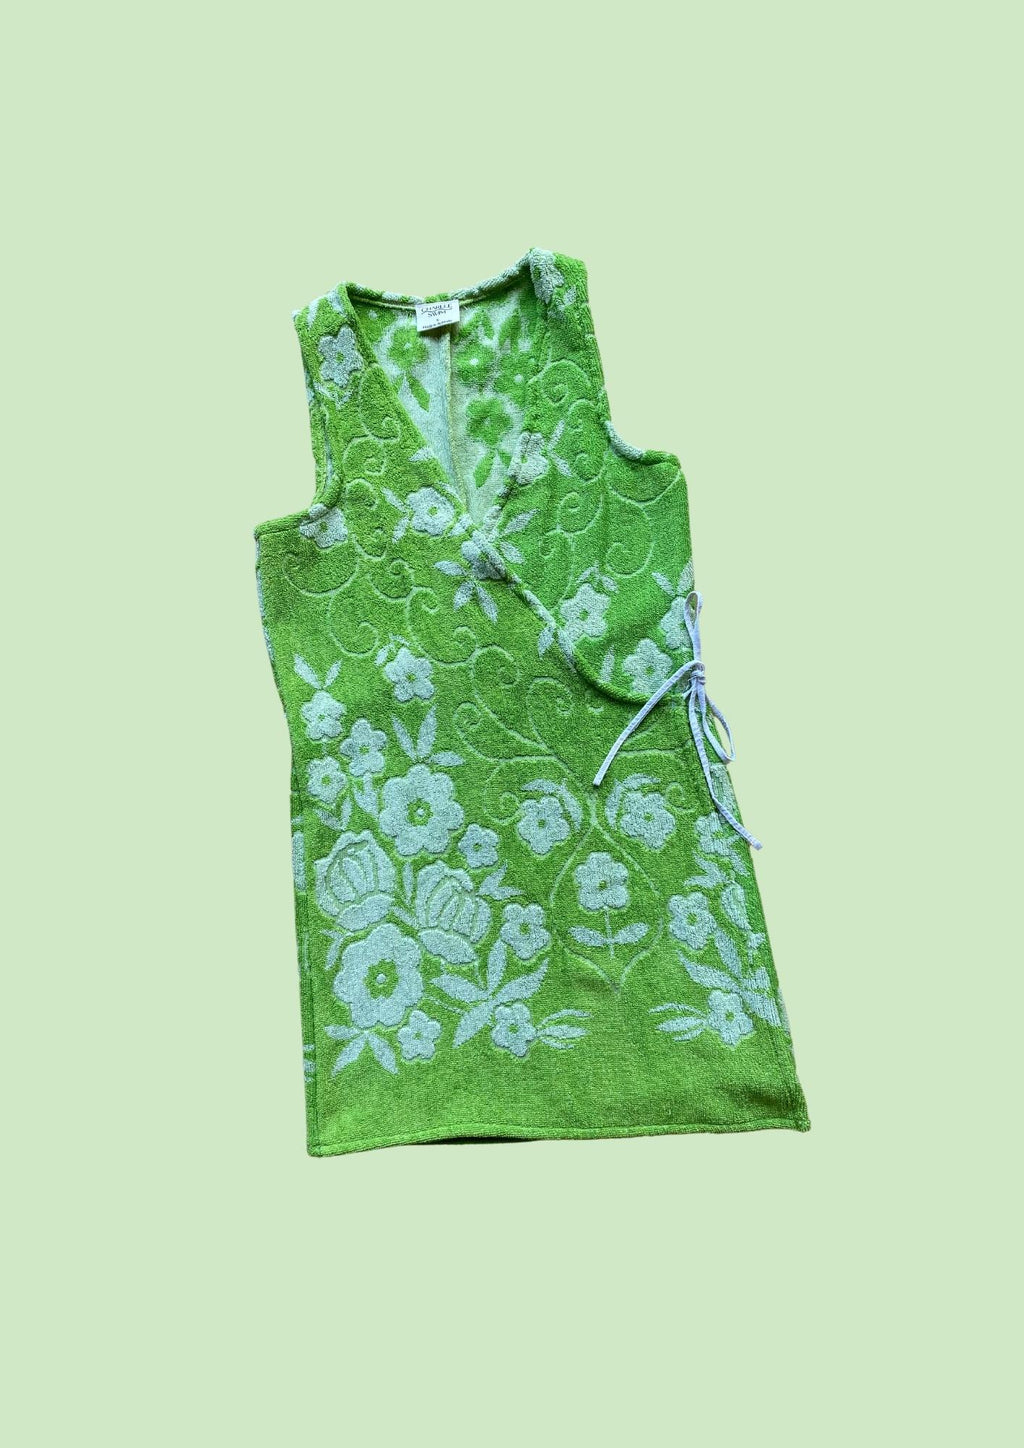 Towel Wrap Dress - Green Garden 2.0